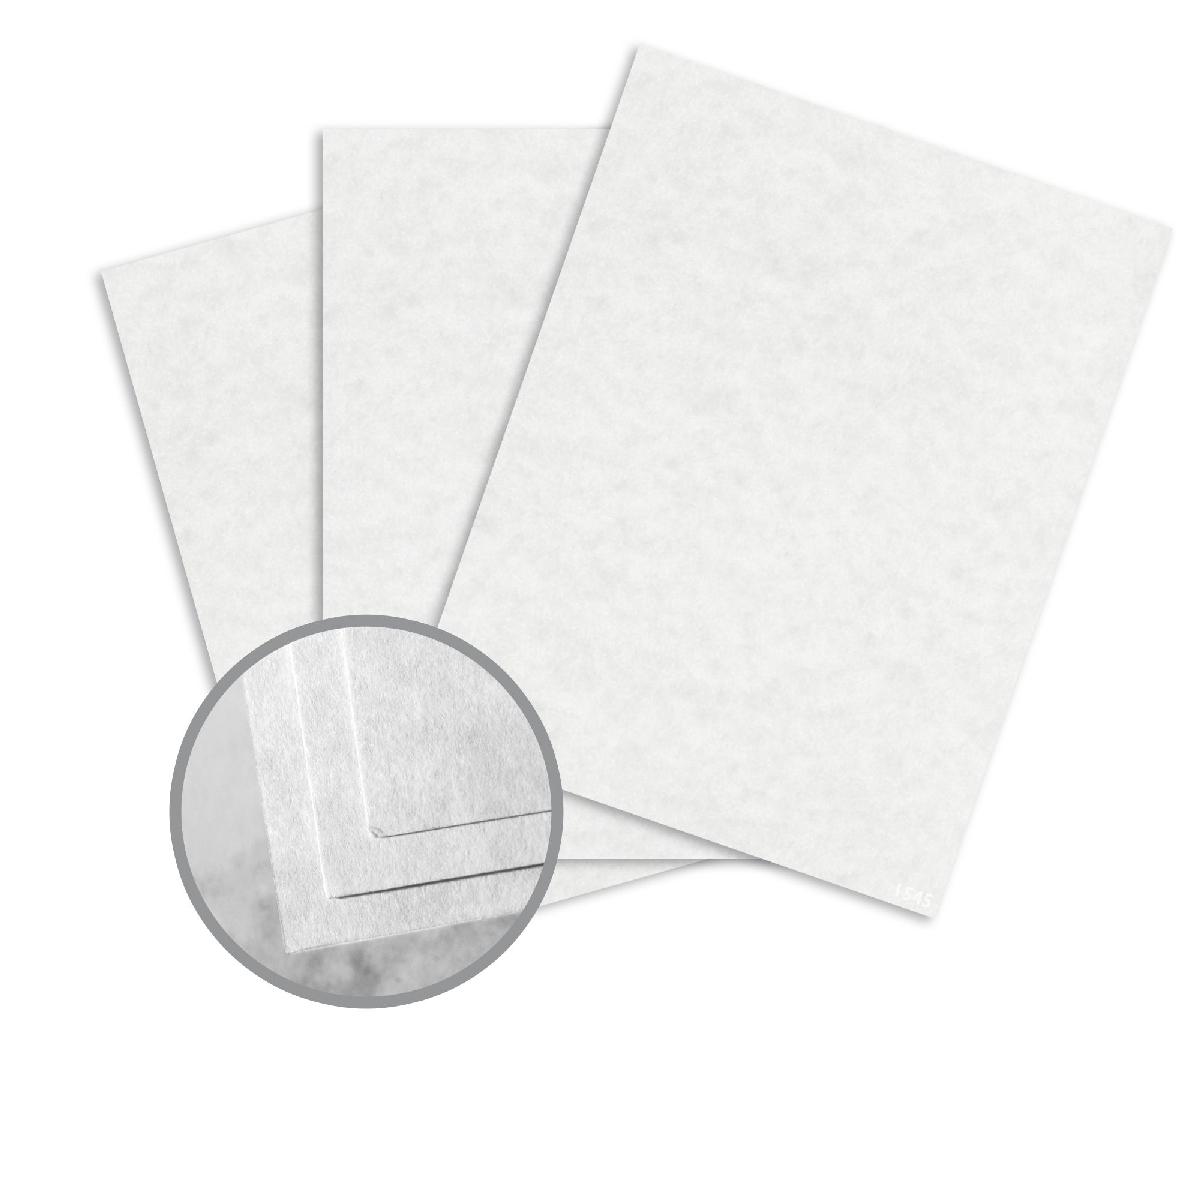 Neenah Paper® Astroparche™ White 65 lb. Vellum Cover 8.5x11 in. 250 Sheets per Ream